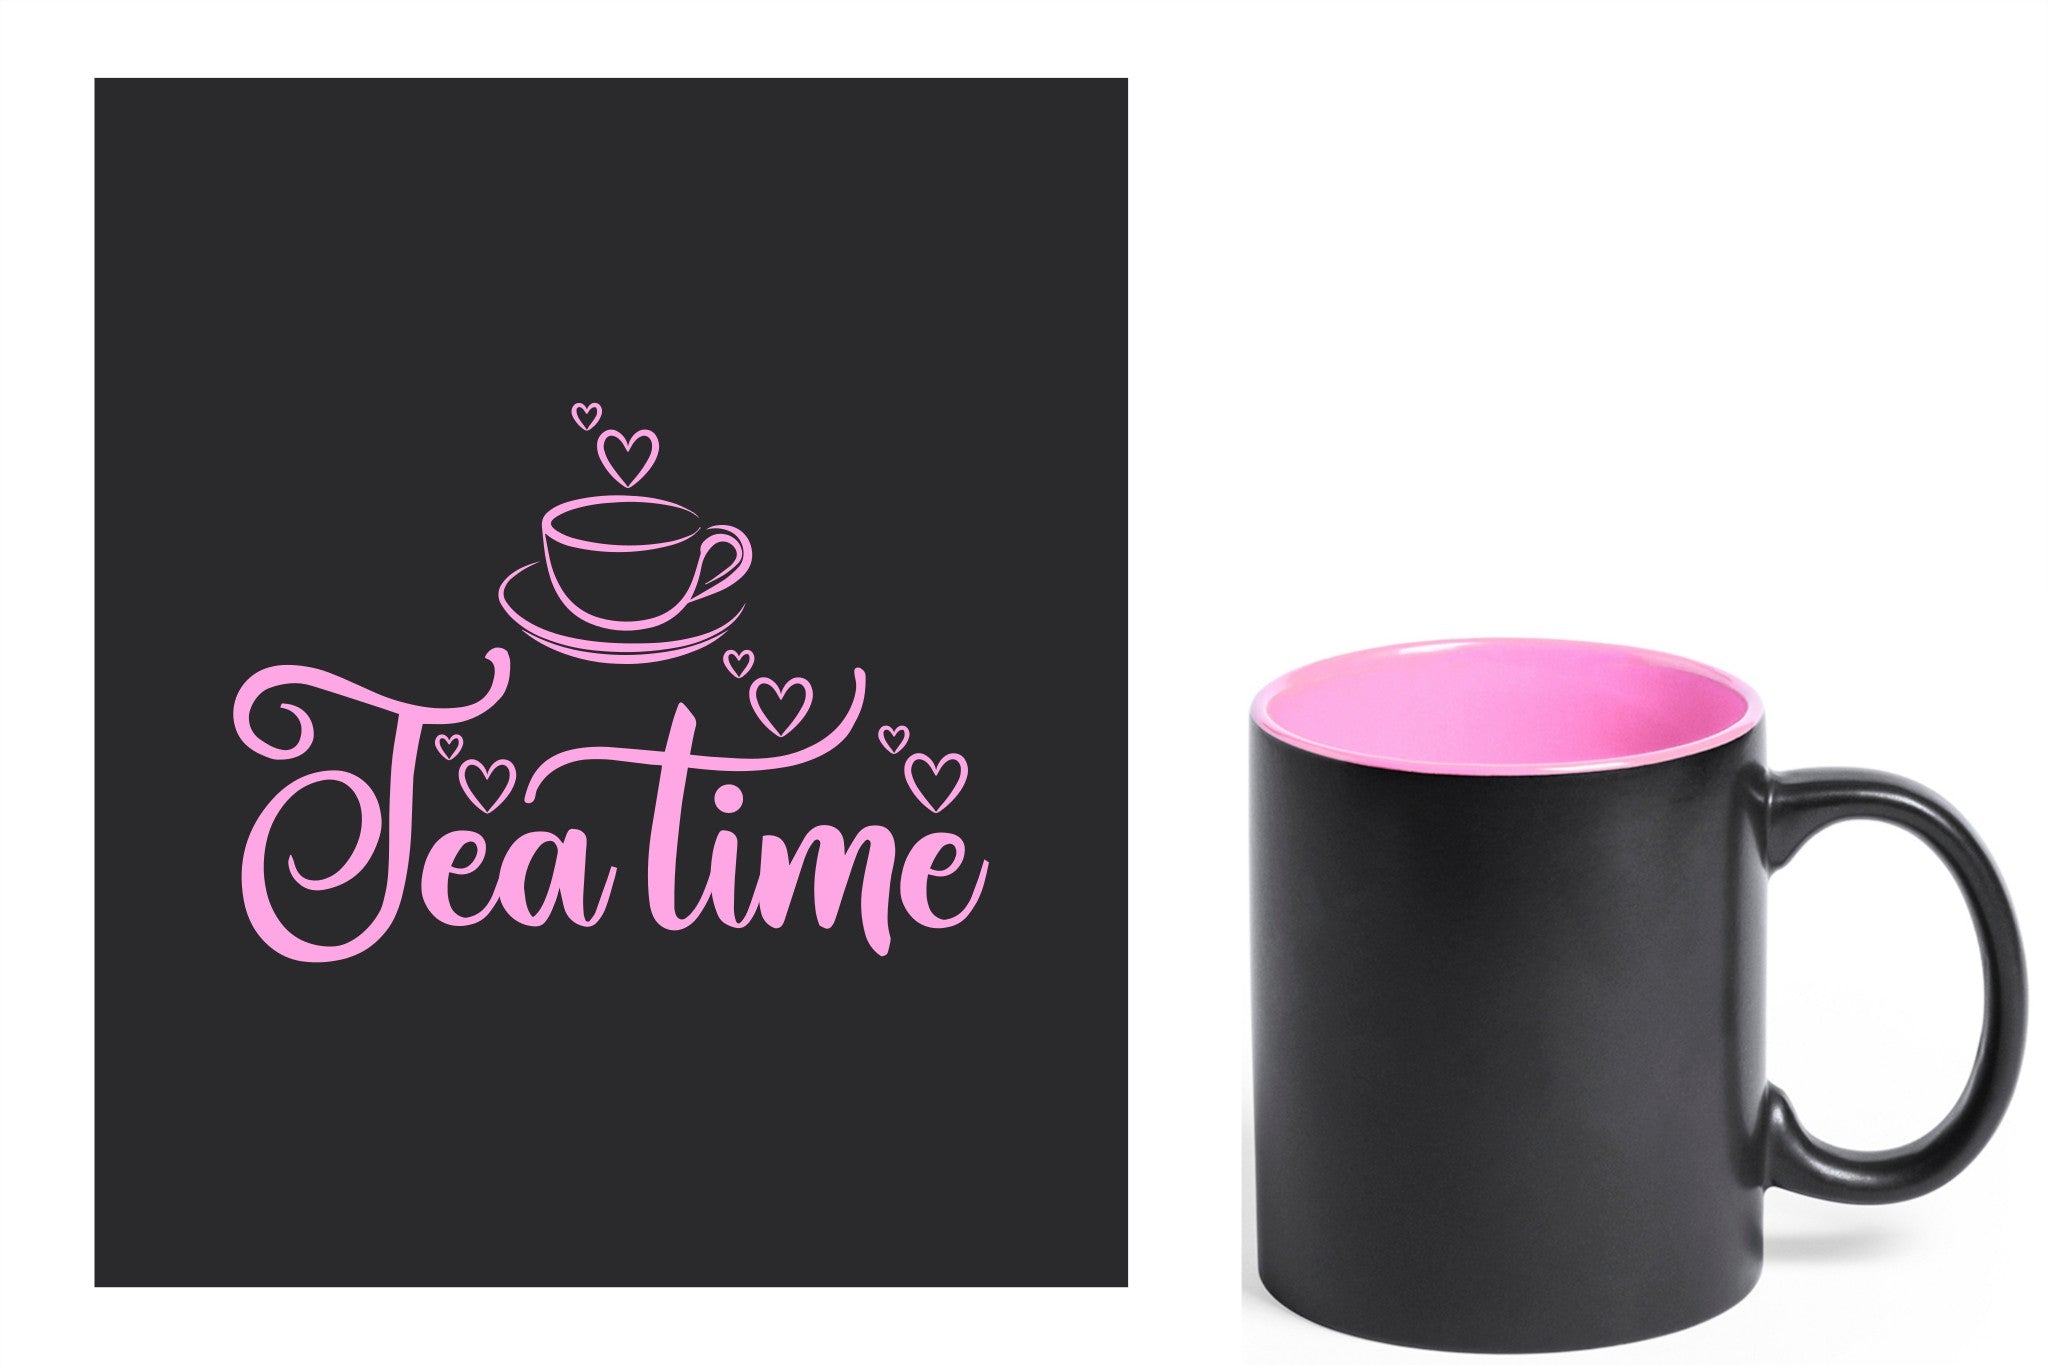 zwarte keramische mok met roze gravure  'tea time'.